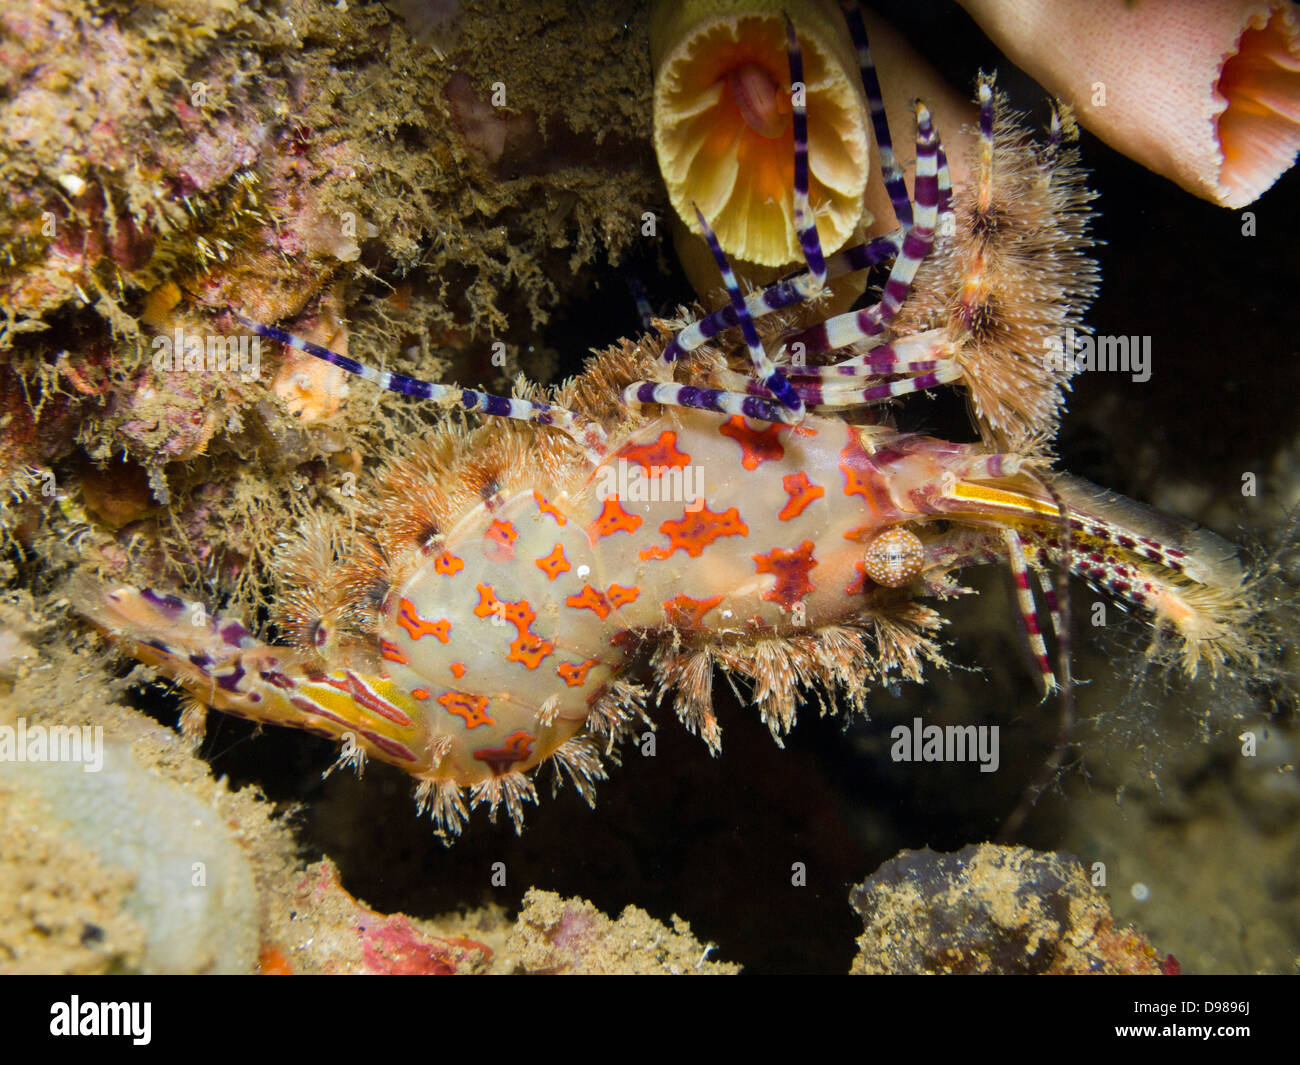 Saron shrimp - Saron marmoratus, or common marble shrimp, Ambon, Indonesia Stock Photo